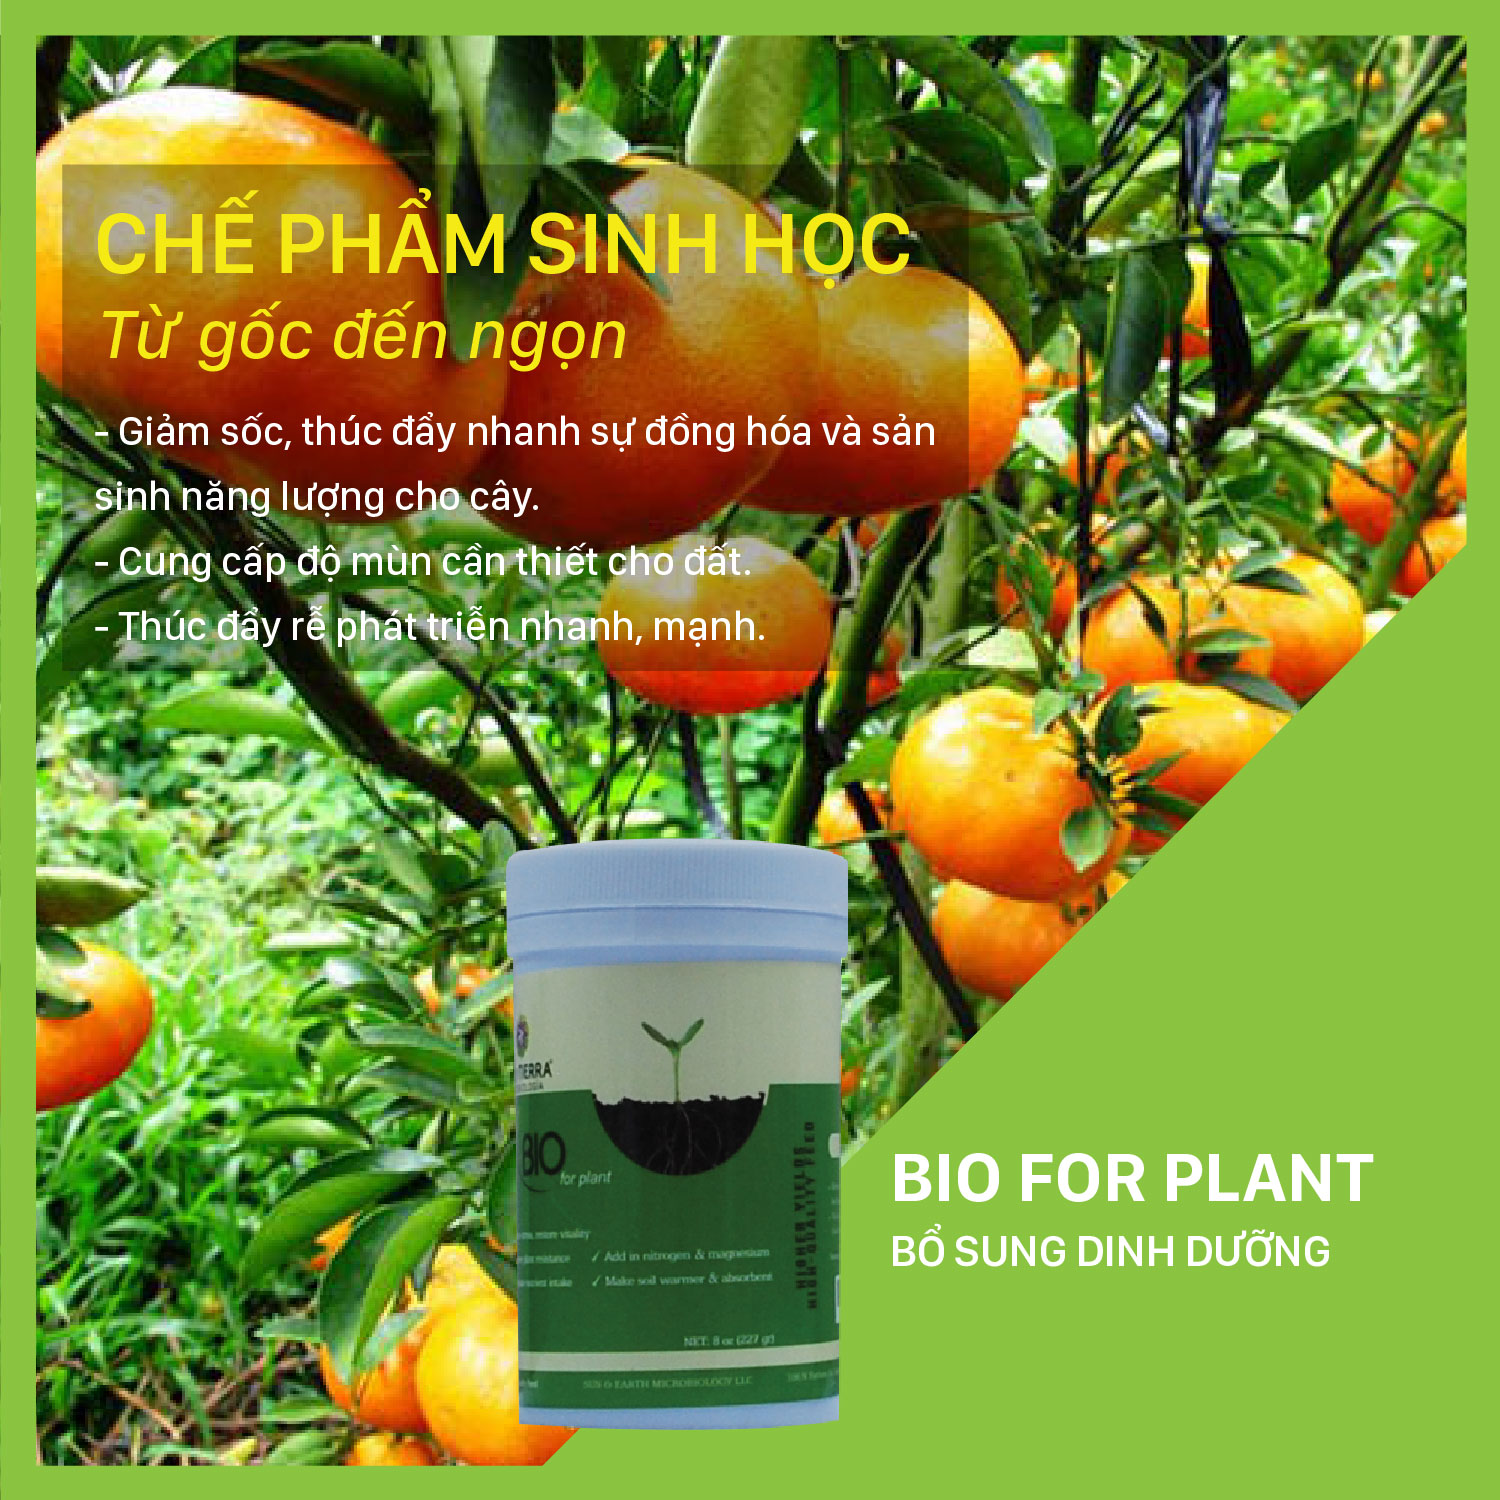 Hình ảnh Chế phẩm cung cấp Ma-giê cho cây trồng Bio For Plant - NSX Sun & Earth Microbiology hủ 227 gram